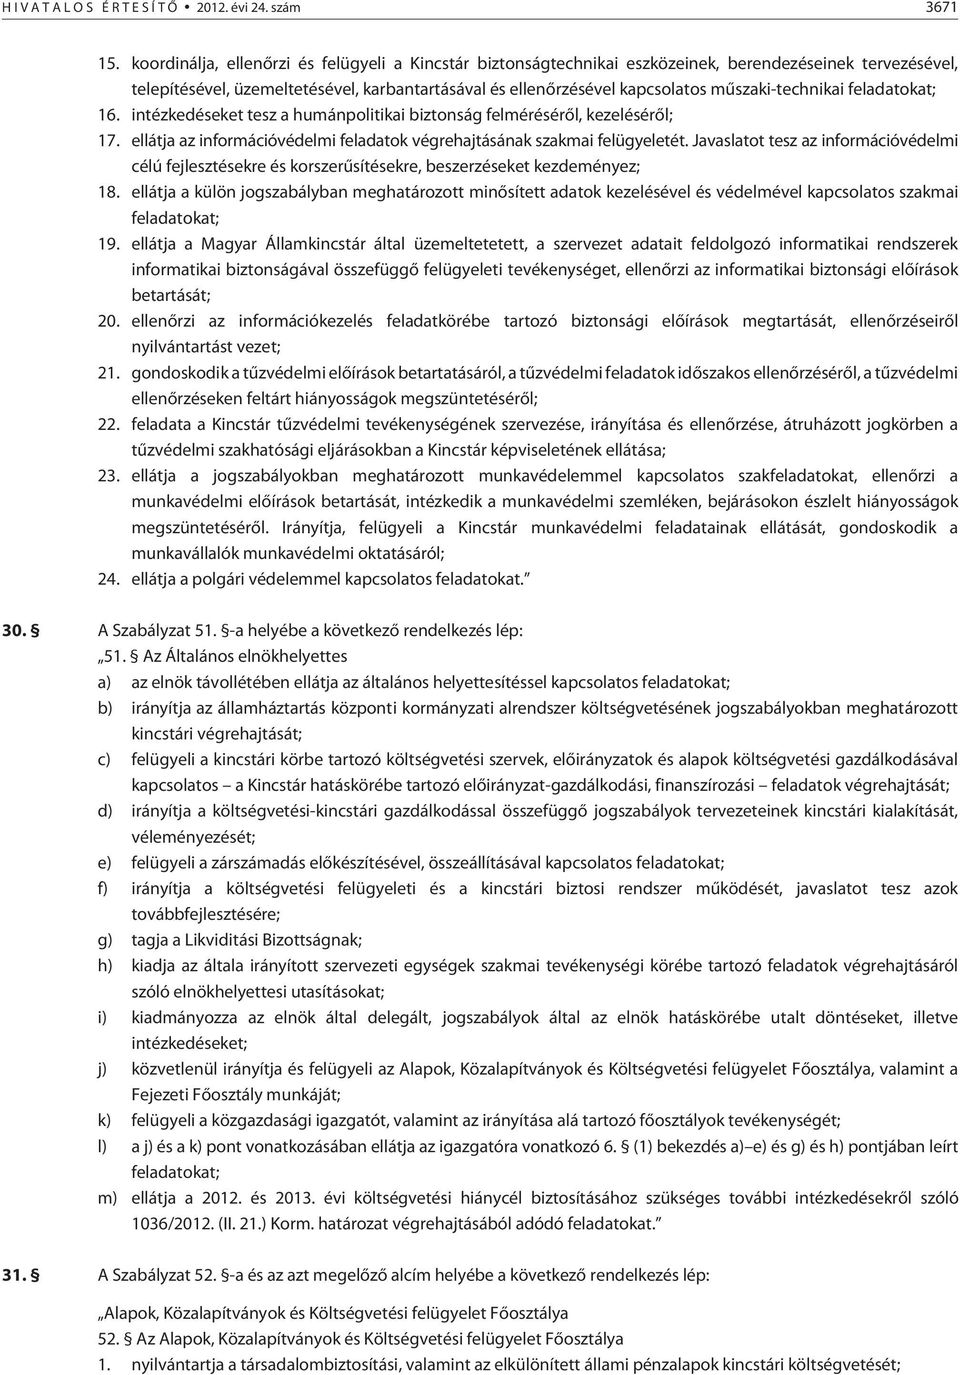 mûszaki-technikai feladatokat; 16. intézkedéseket tesz a humánpolitikai biztonság felmérésérõl, kezelésérõl; 17. ellátja az információvédelmi feladatok végrehajtásának szakmai felügyeletét.